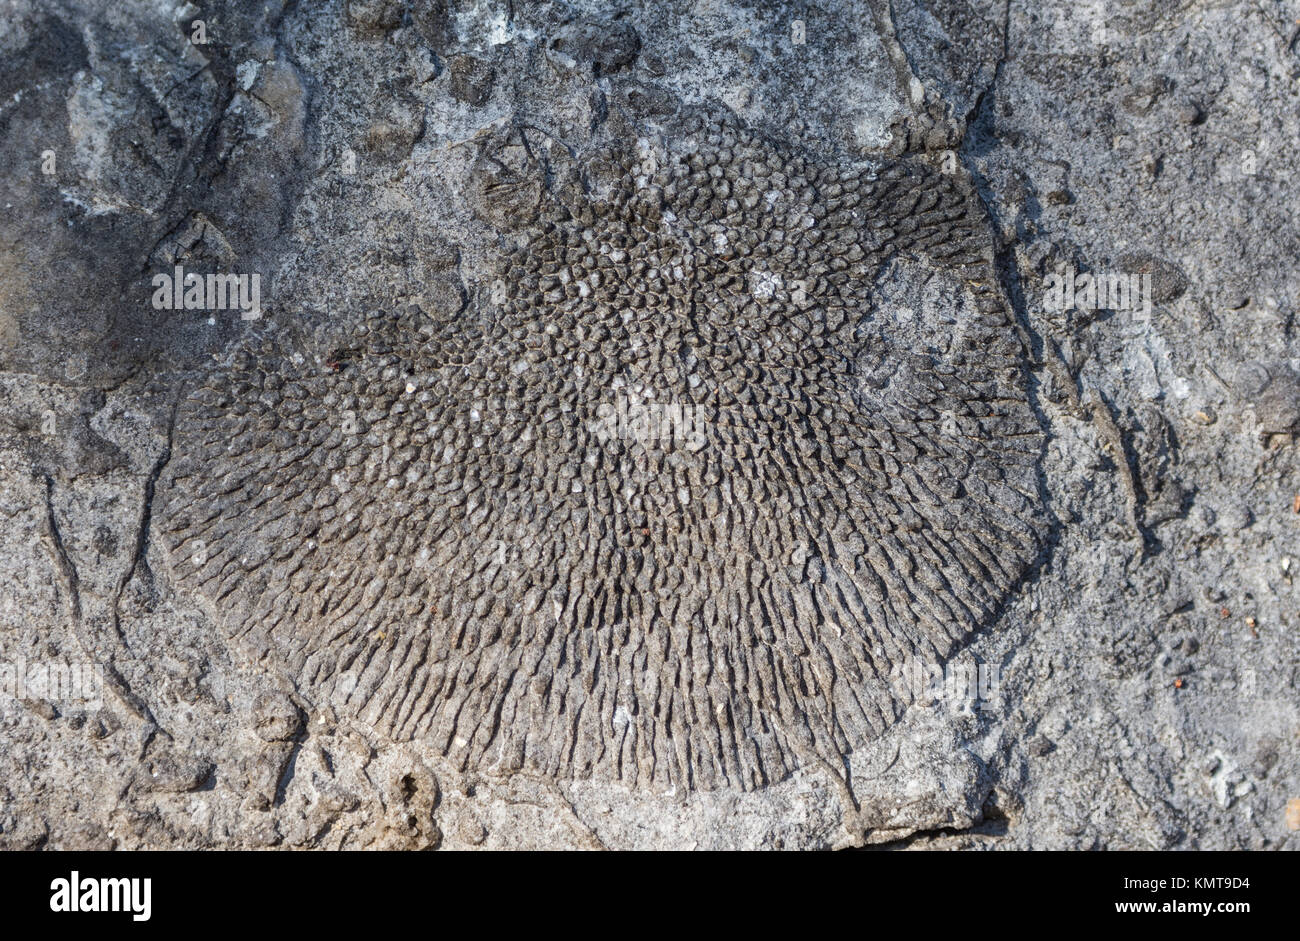 Coralli fossili conservati nel calcare giurassico in Tsingy de Bemaraha National Park. Madagascar, Africa. Foto Stock